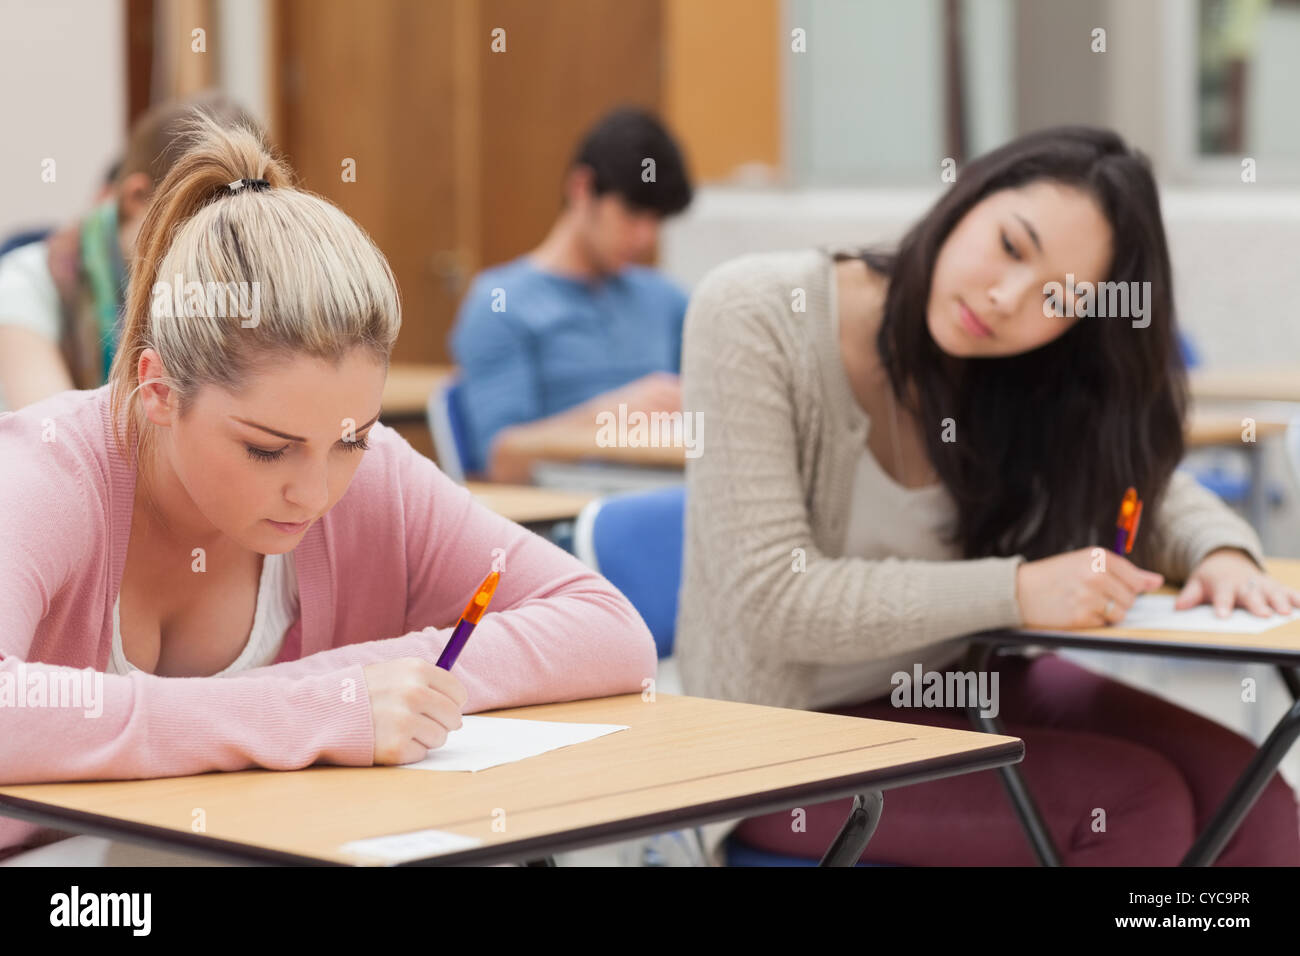 Brünette versucht, blonde Studentin in Prüfung zu kopieren Stockfoto